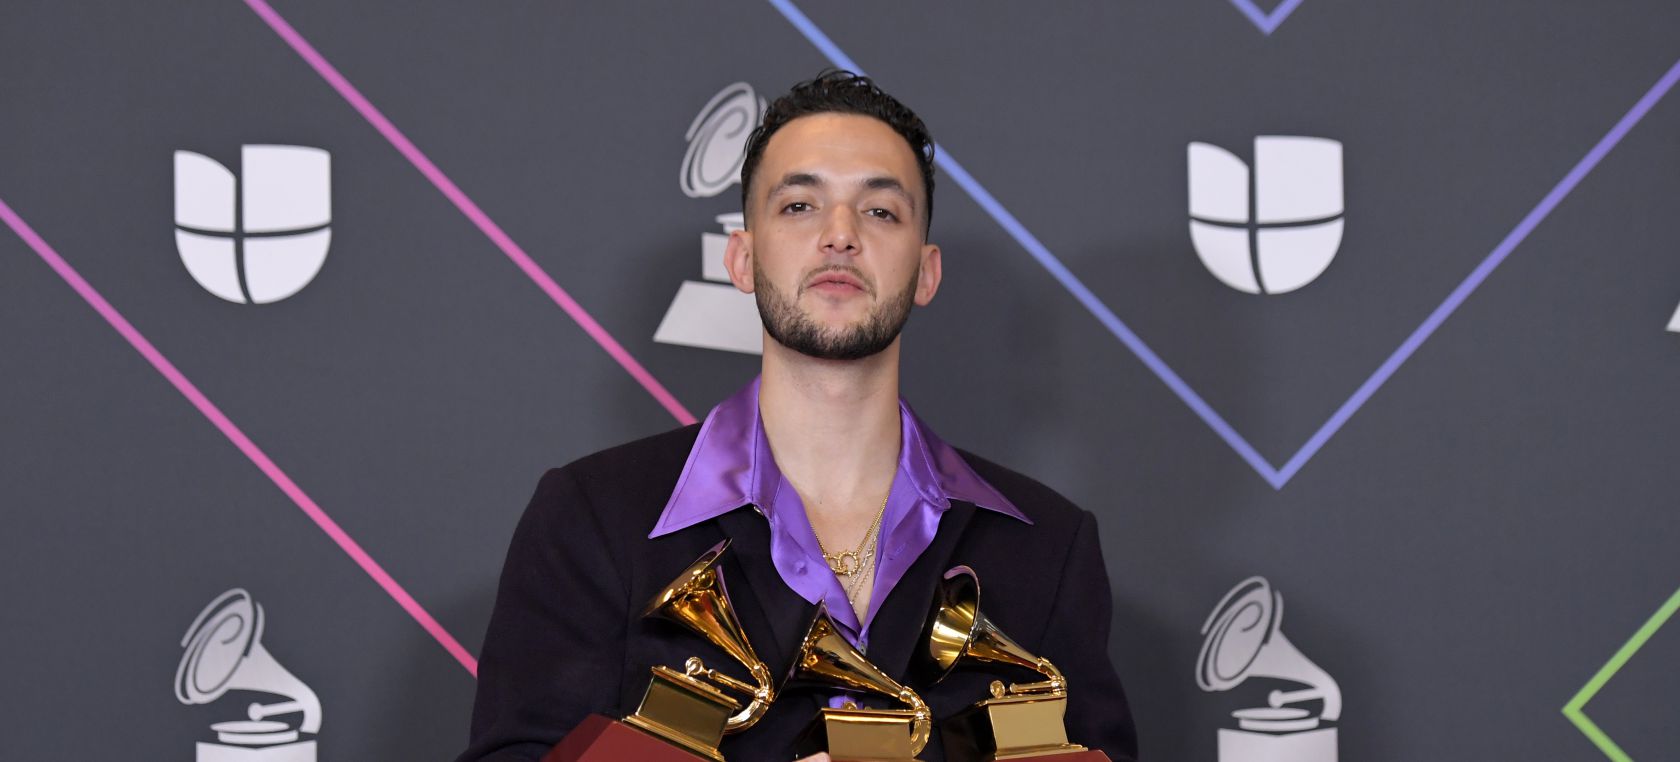 Vetusta Morla: Ni siquiera sabemos si ganar el Latin Grammy cambiaría  algo - Hola News